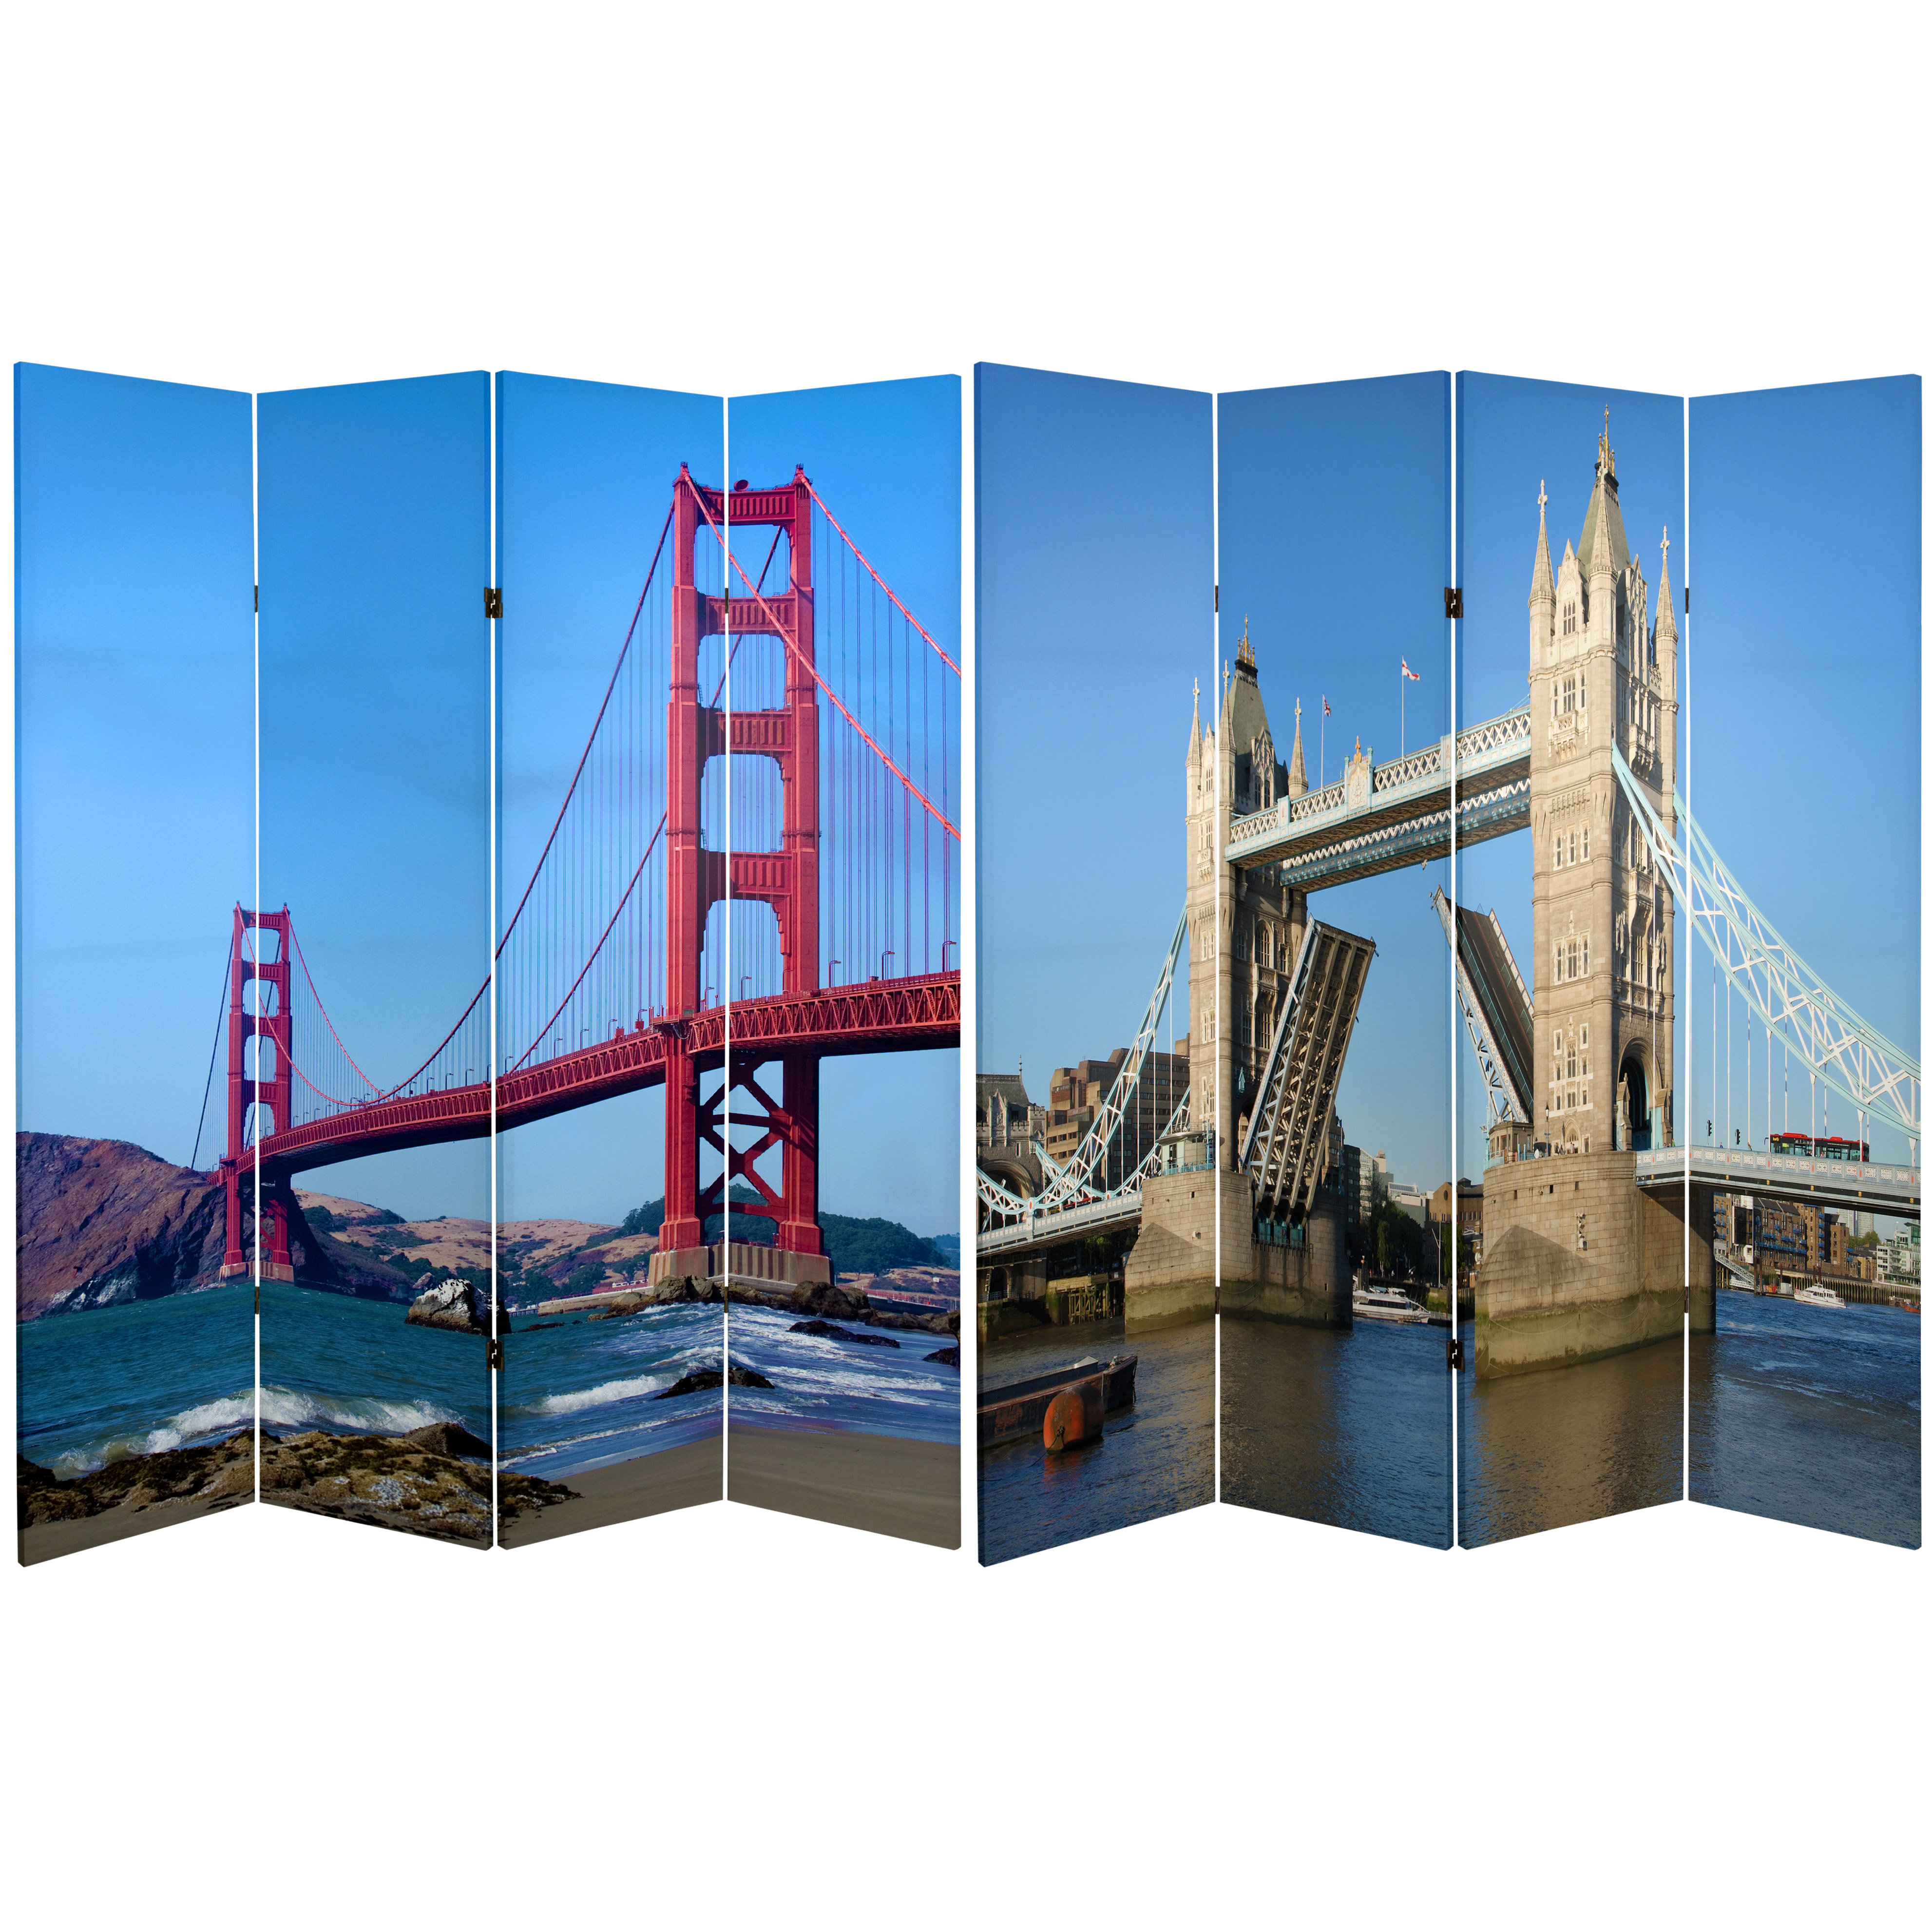 Buy 6 ft. Tall Bridges Room Divider Online (CAN-BRIDGE) | Satisfaction ...